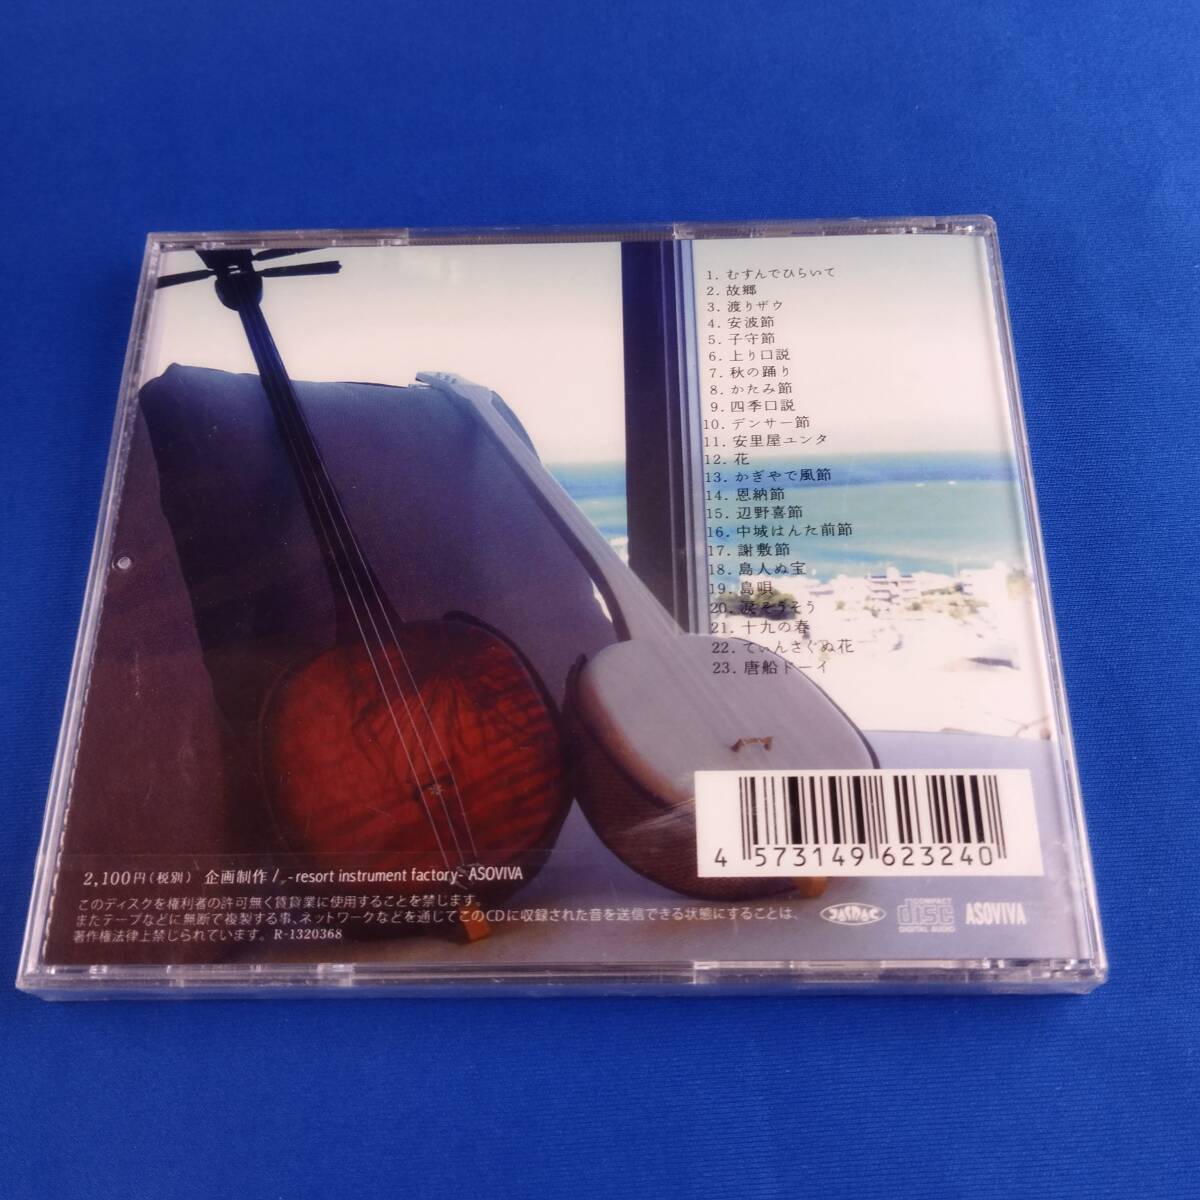 2SC16 CD 未開封 OKINAWA SANSHIN SONG SELLECTION 三線屋さんが唄って奏でる沖縄曲集_画像2